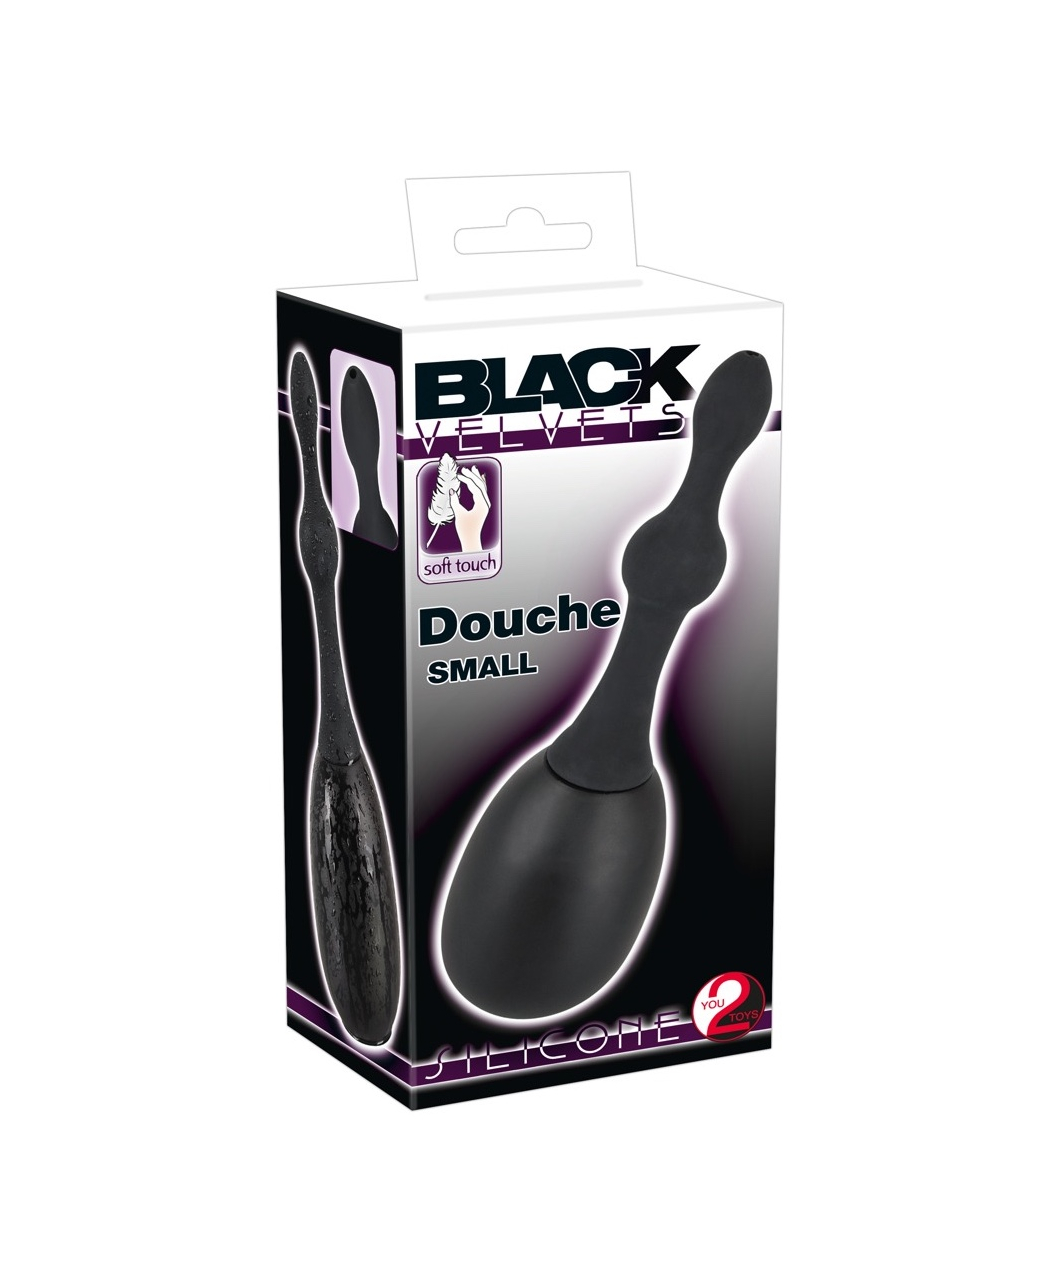 Black Velvets douche with 14 cm long attachment